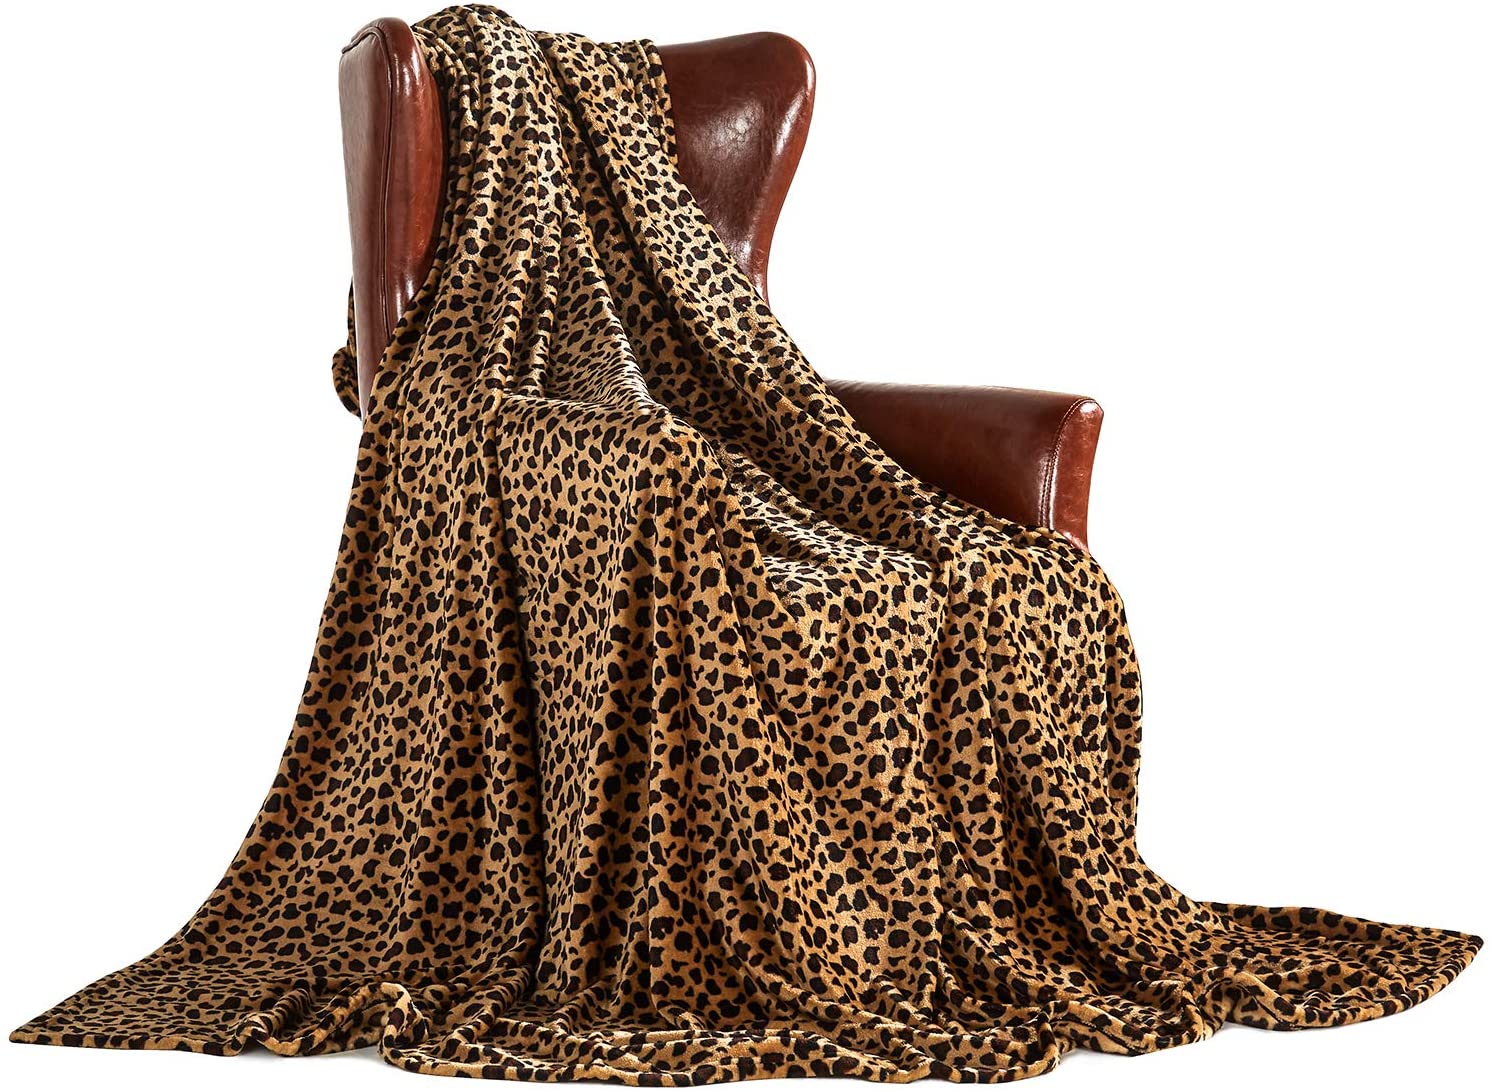 MERRYLIFE Fleece Leopard Print Blanket, 60-Inch x 90-Inch